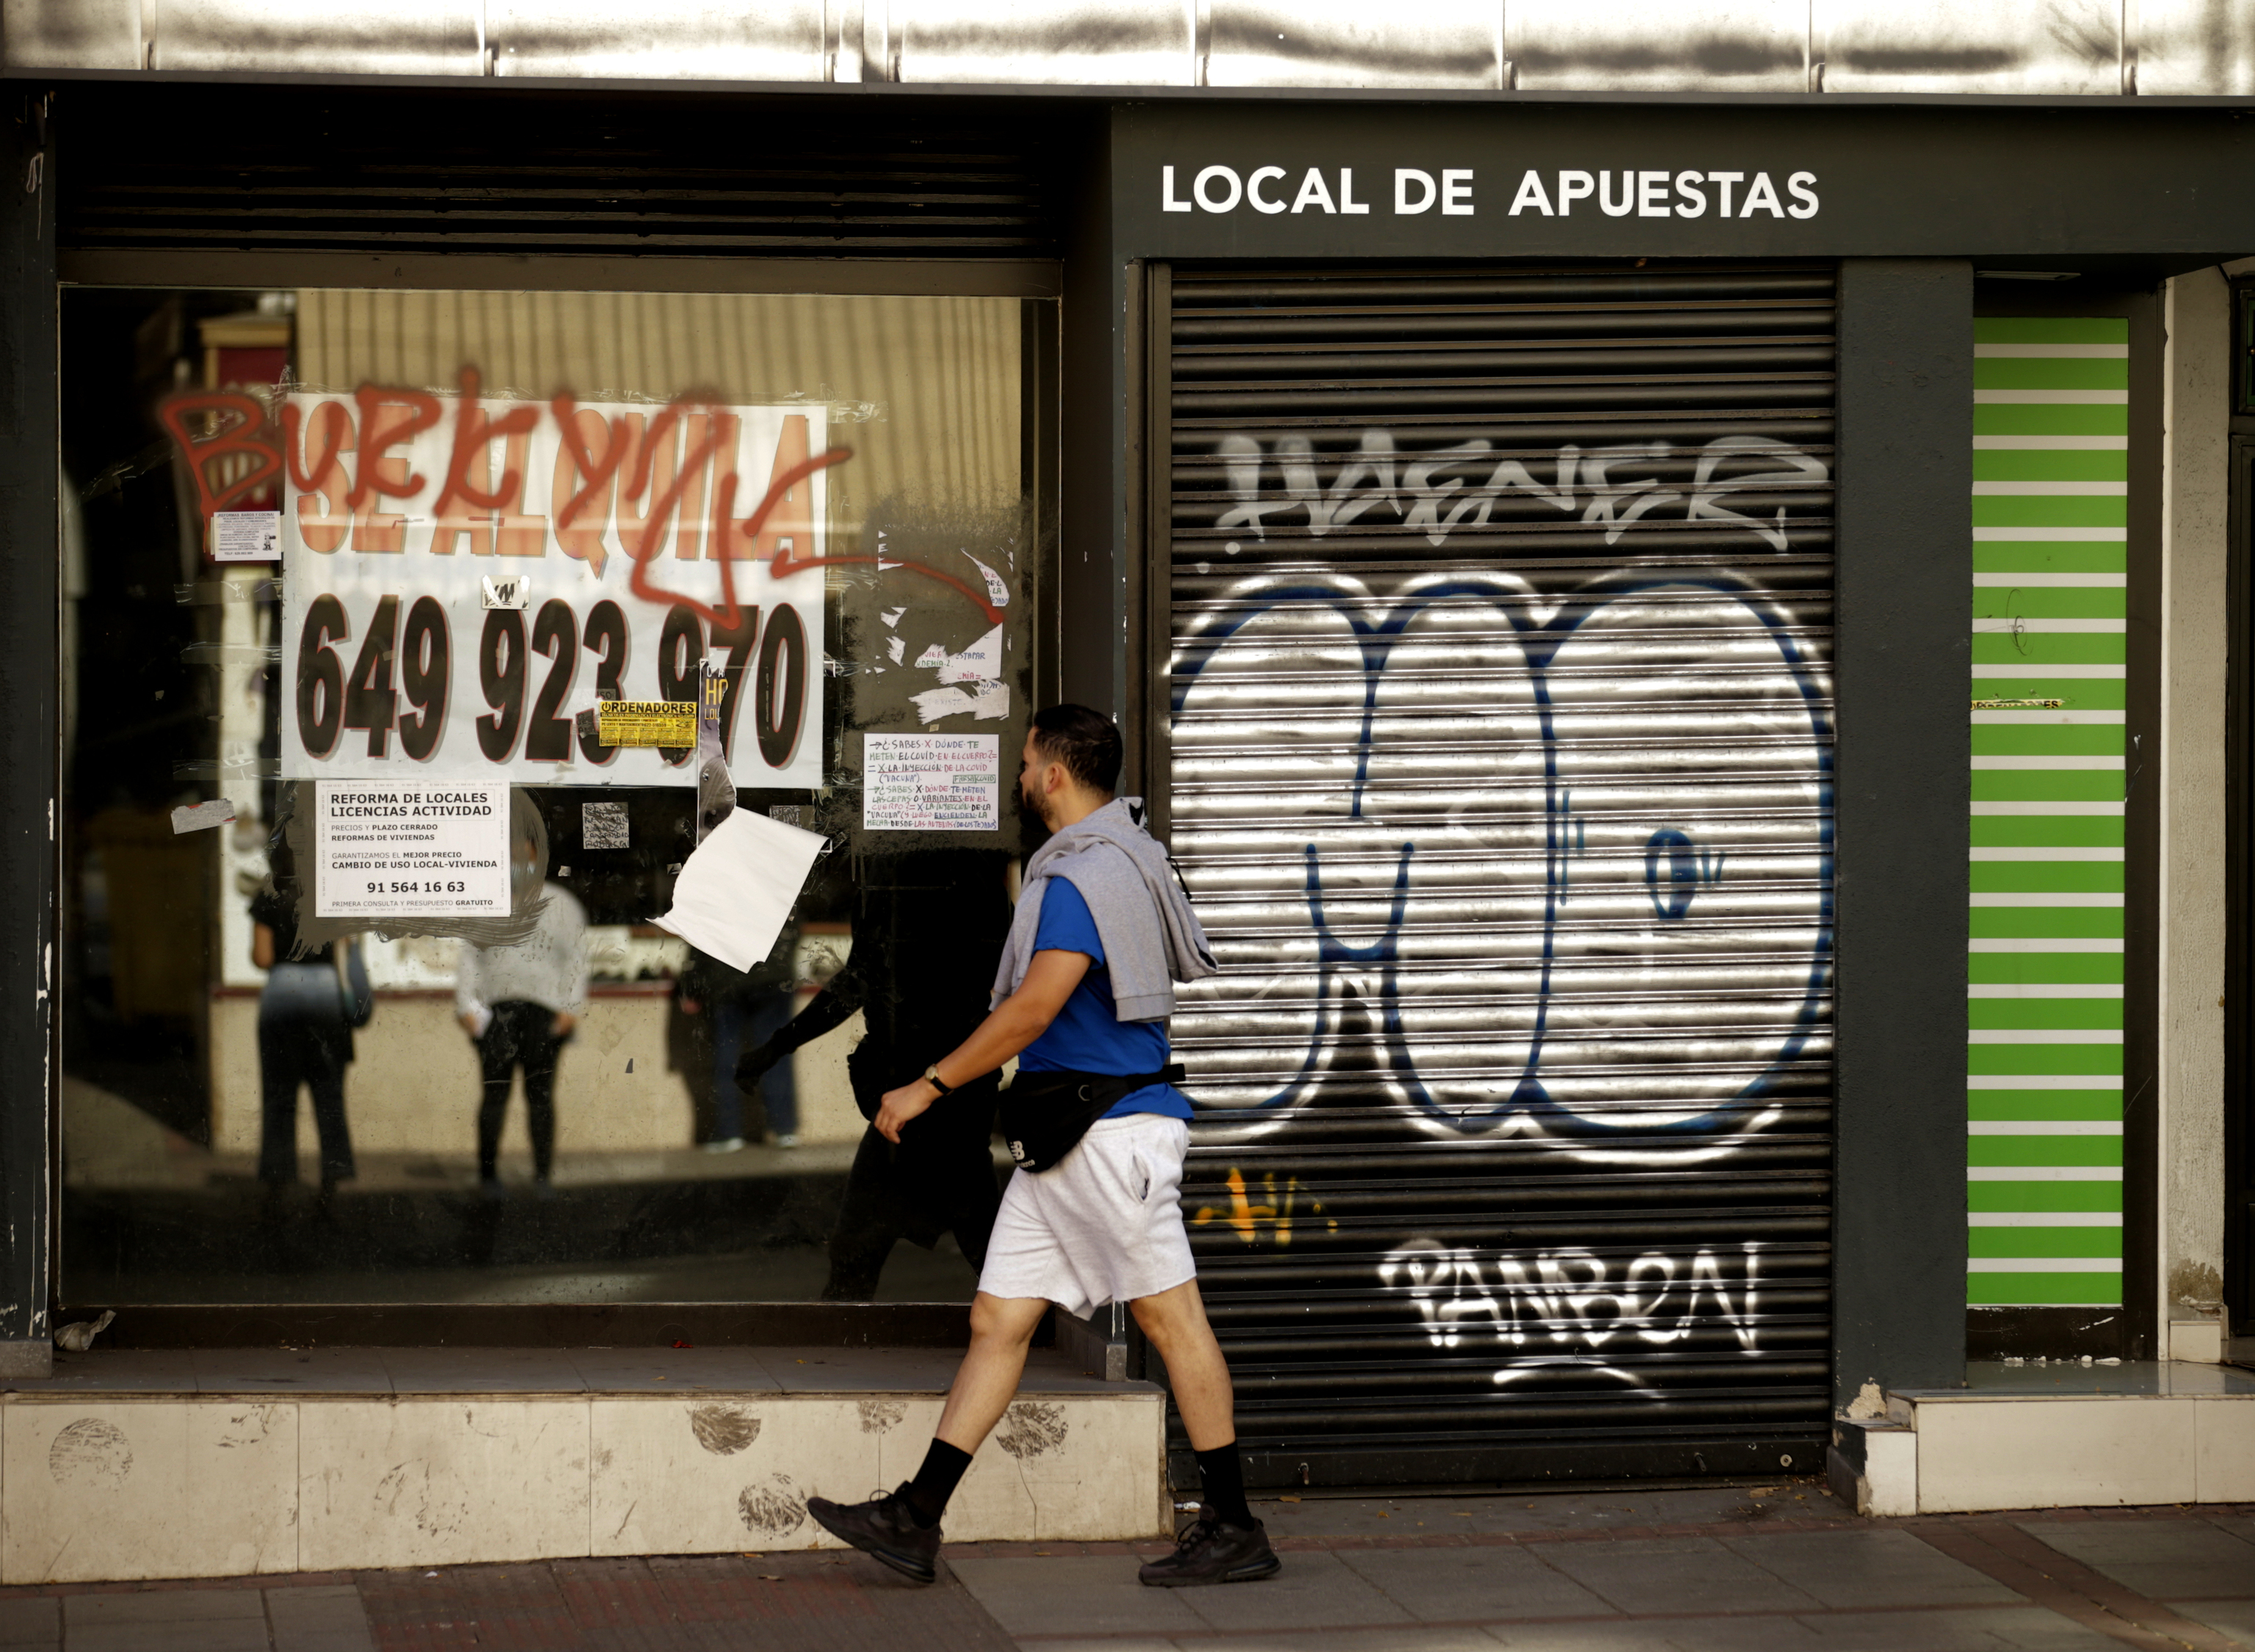 El enésimo conflicto por las casas de apuestas: la Comunidad quiere  permitir el pago con tarjetas de crédito pese a la oposición vecinal |  Madrid